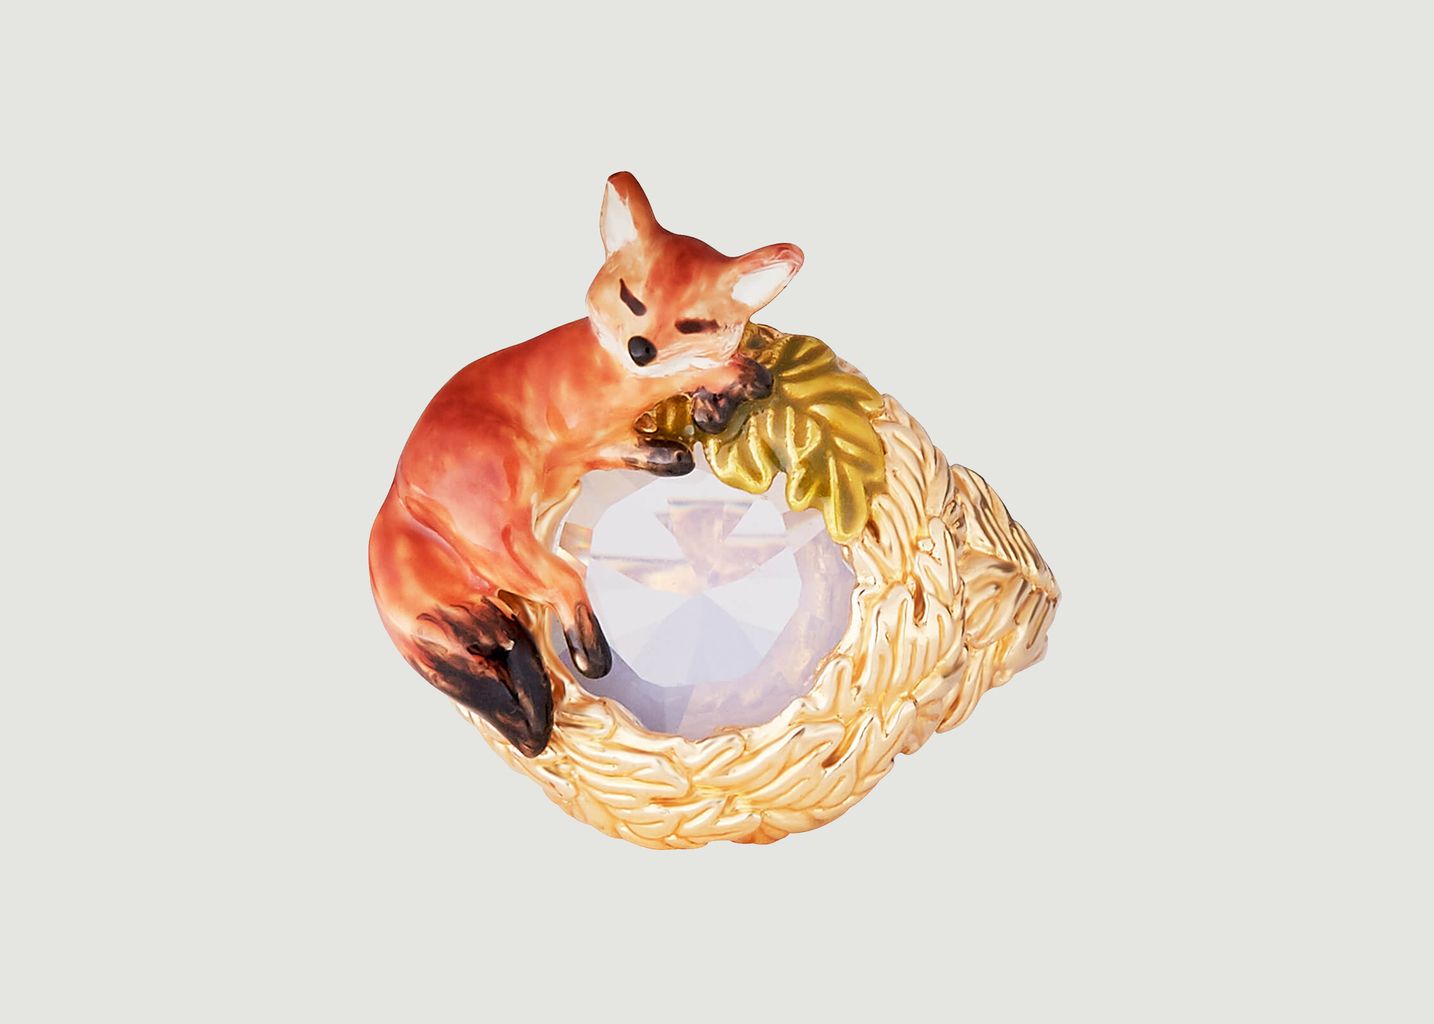 Fox cub with oak leaves wreath cocktail ring - Les Néréides